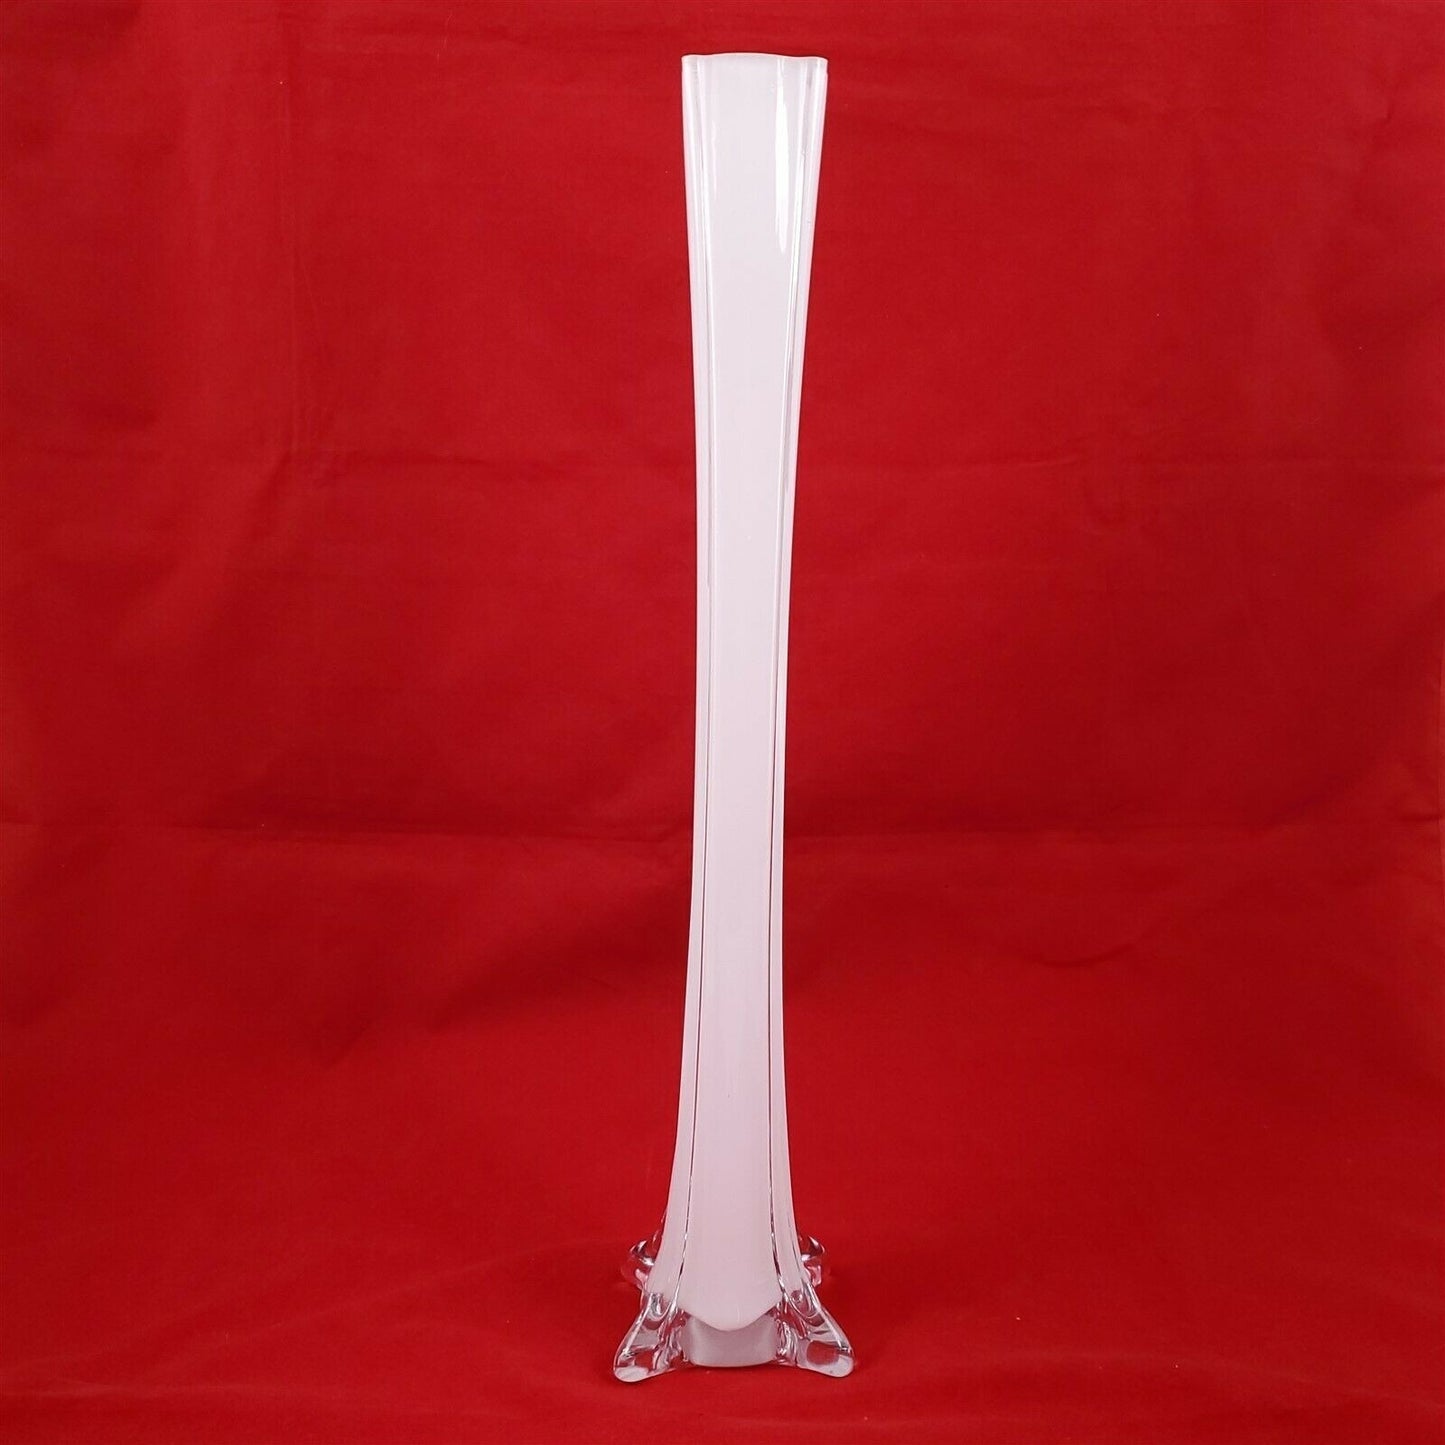 White Glass Tower Vase Eiffel Tower Vase 16" Tall Centerpiece Wedding